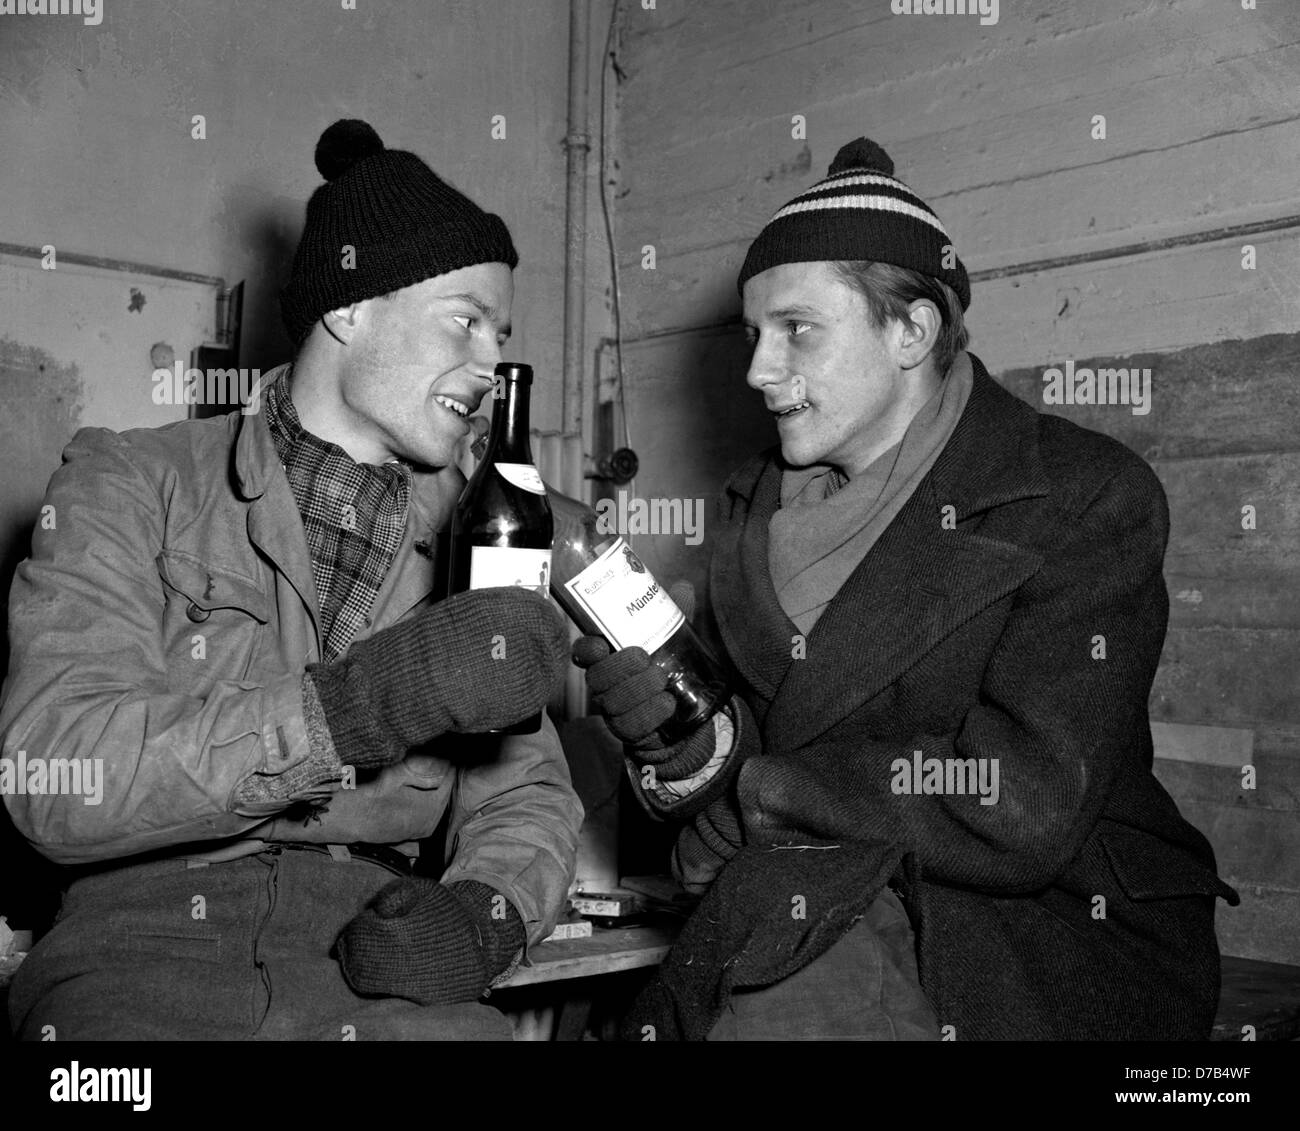 René Leudesdorff (l) und Georg von Hatzfeld klirrende Flaschen Weine. Bild von der Flak-Bunker auf der Insel Helgoland am 22. Dezember 1950. Stockfoto